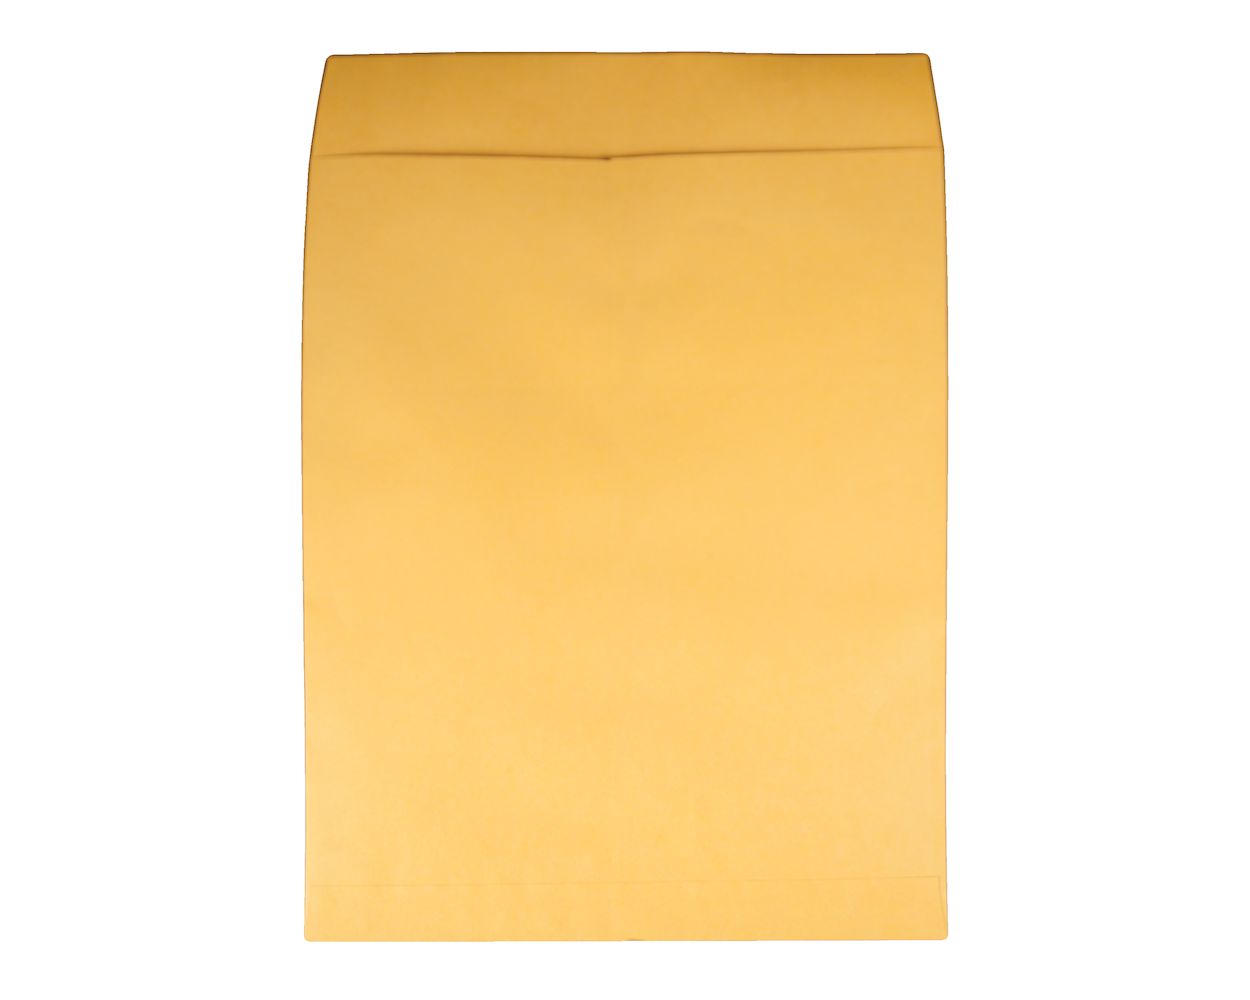 15 x 18 Jumbo Envelopes Brown Kraft Pack of 50 28lb 